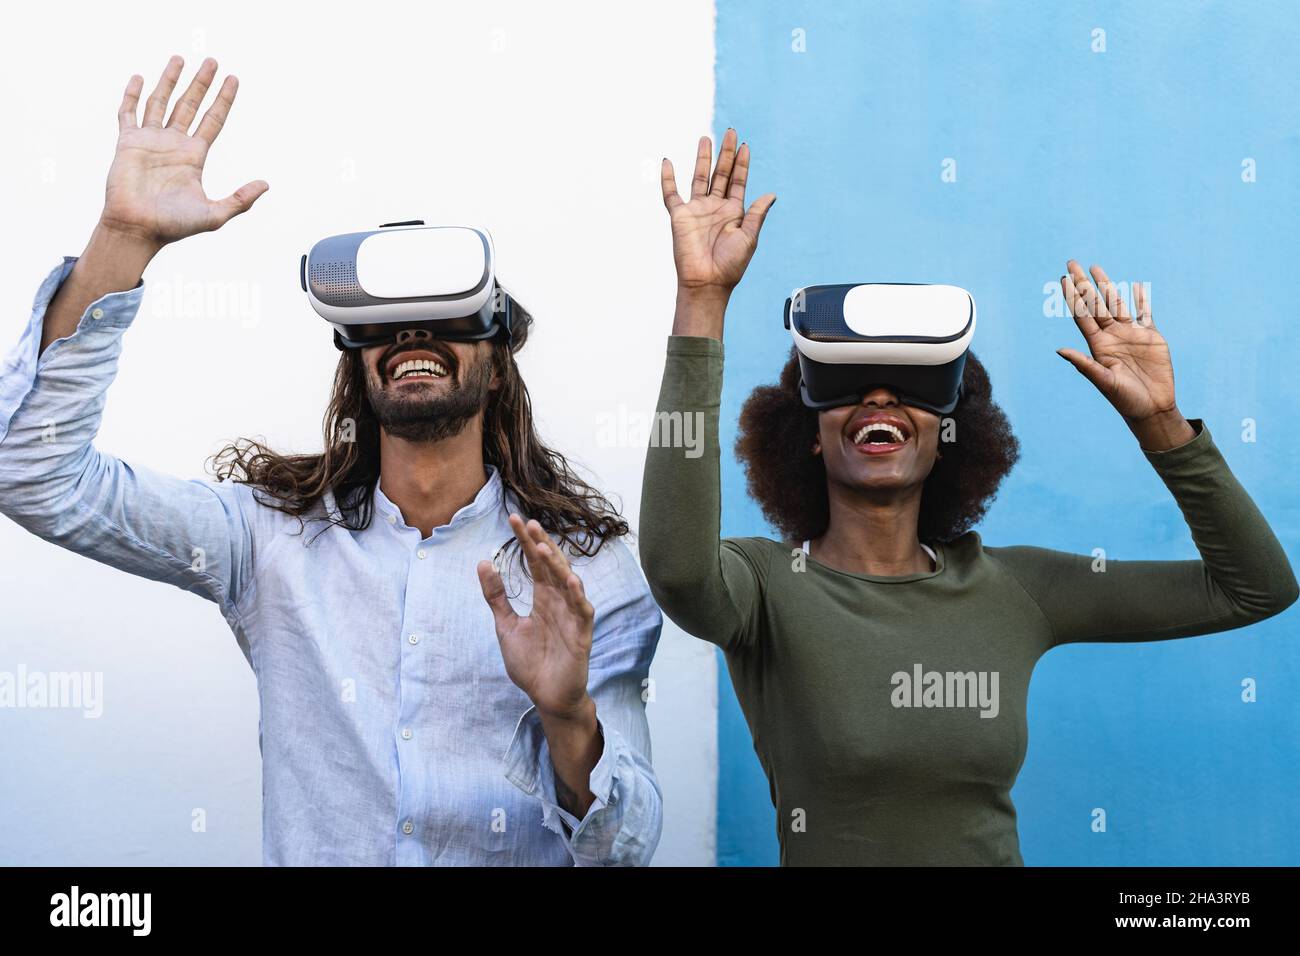 Des amis heureux qui s'amusent avec des lunettes de réalité virtuelle innovantes - Tech gaming Entertainment et métaverse concept Banque D'Images